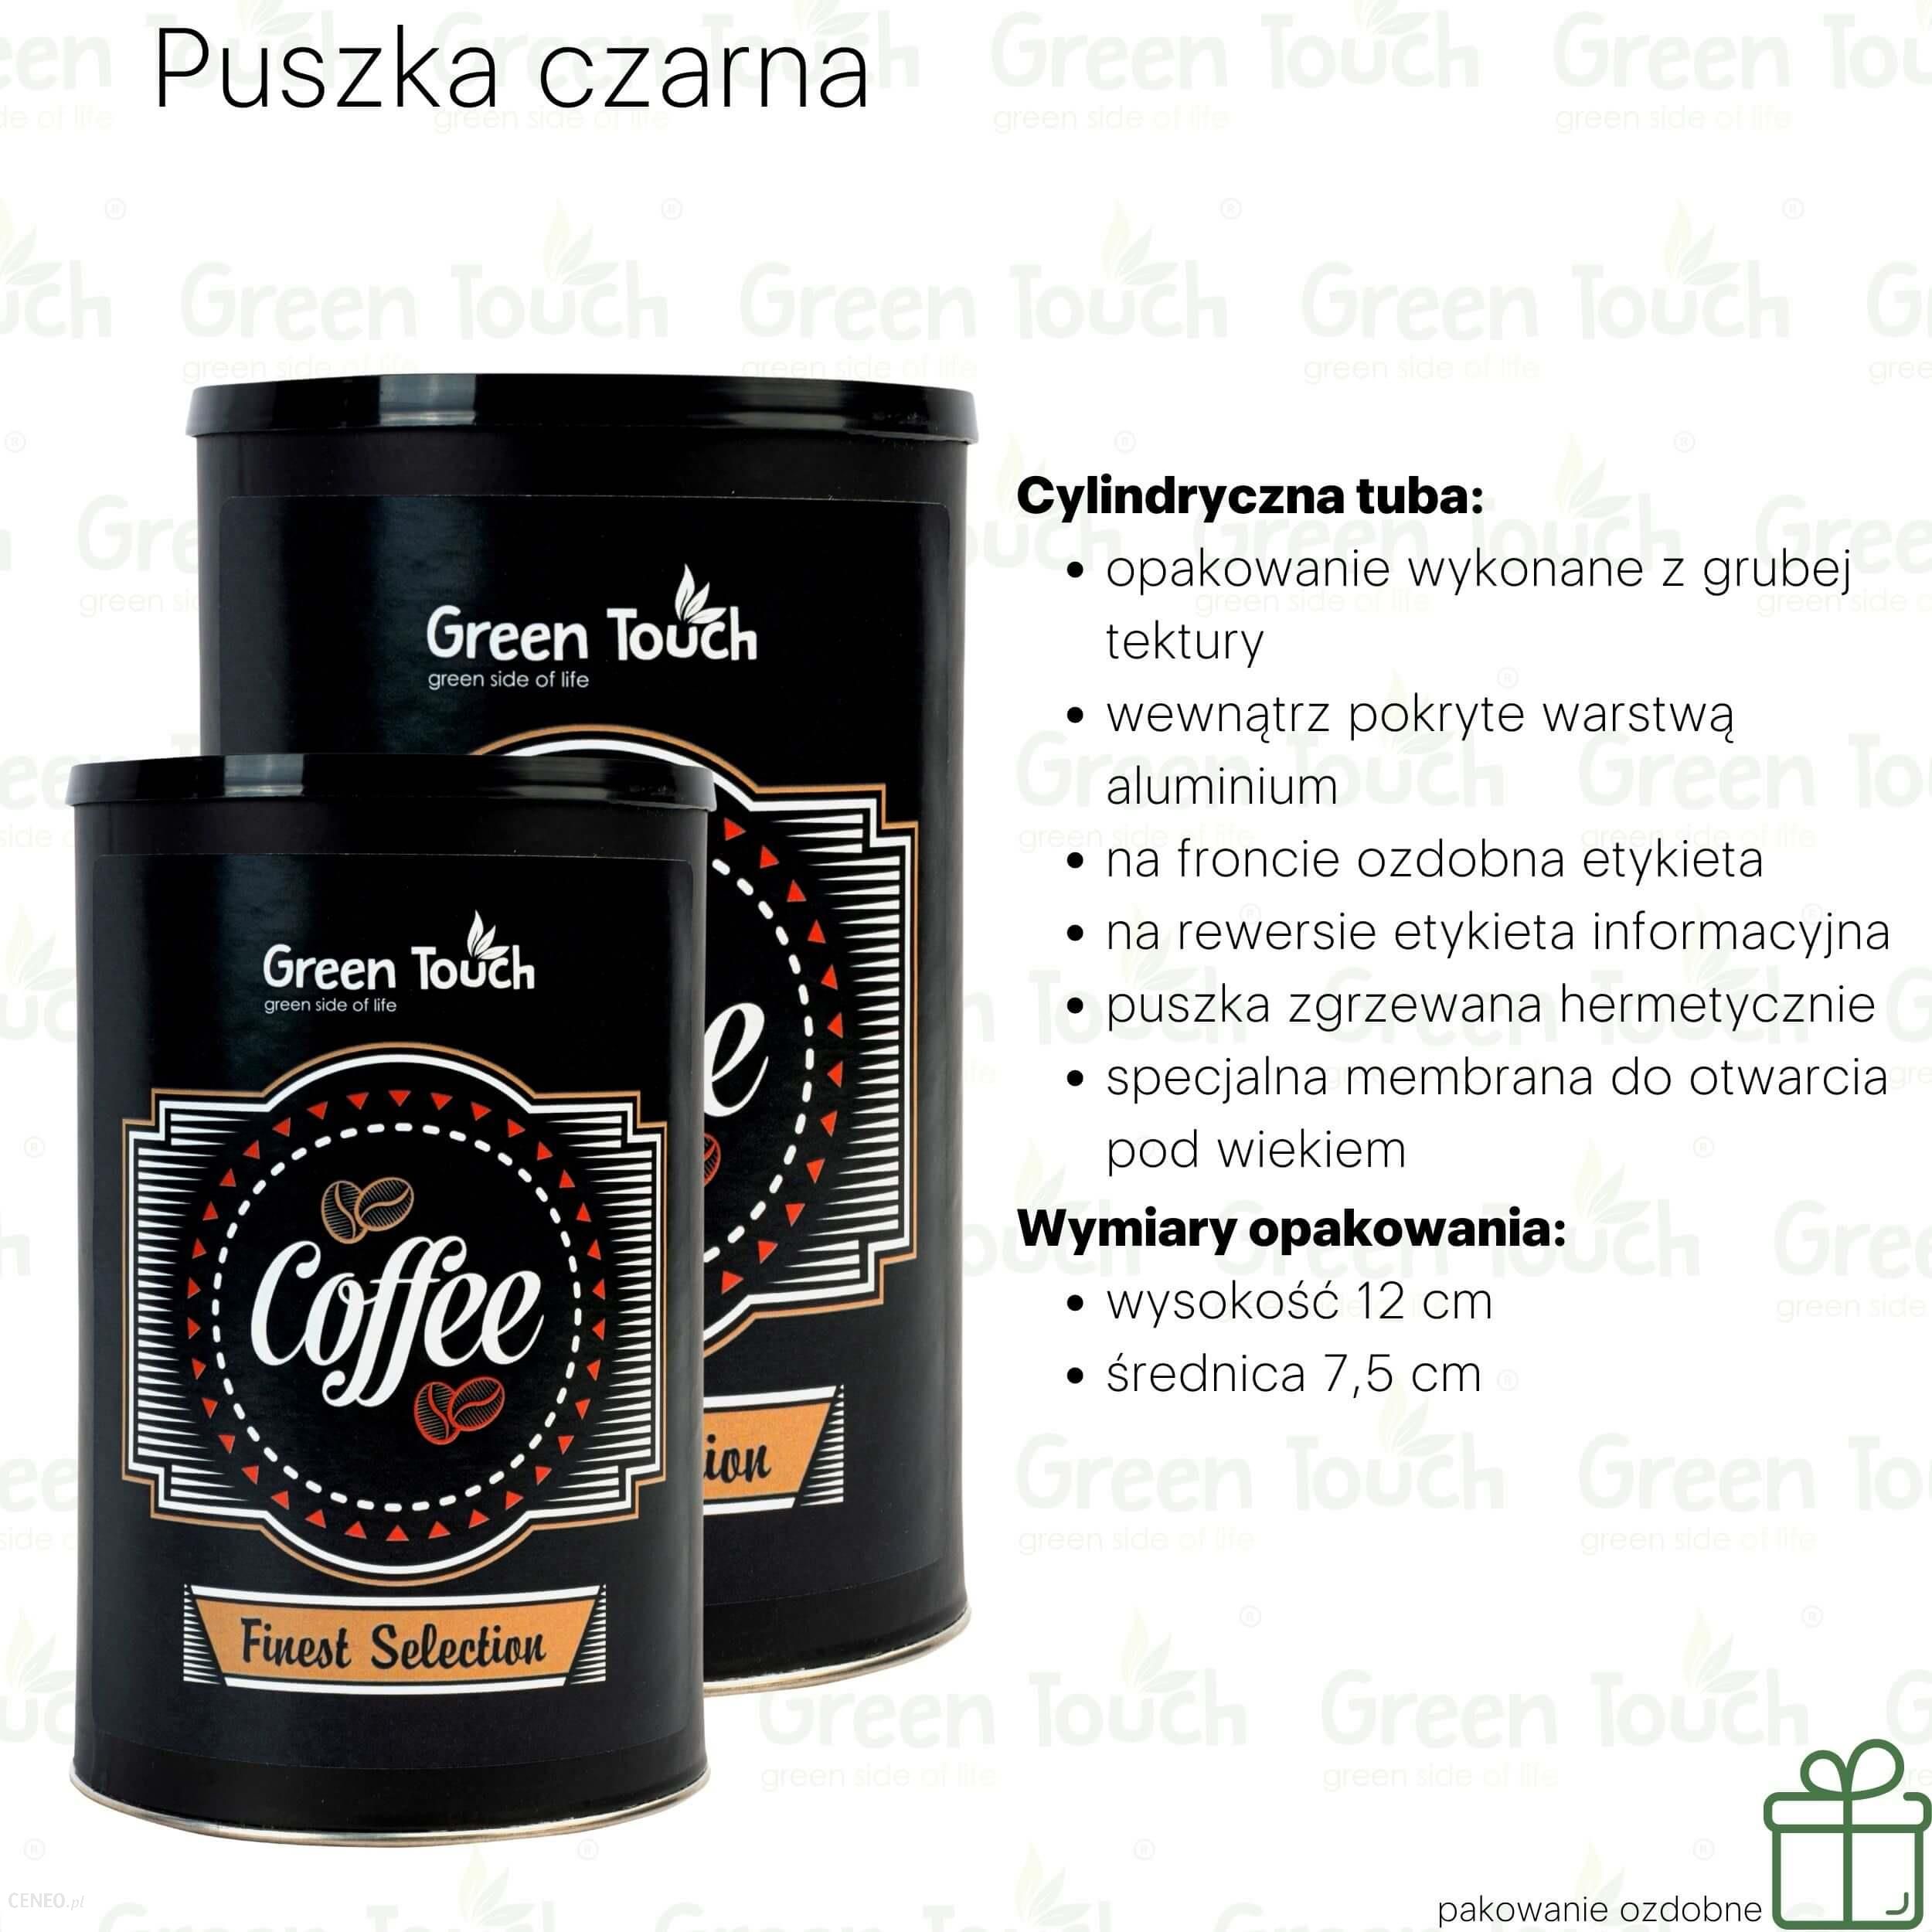 Progressive Kawa Ziarnista Energy Coffe (Pakowanie Ozdobne, Puszka Czarna 140g)